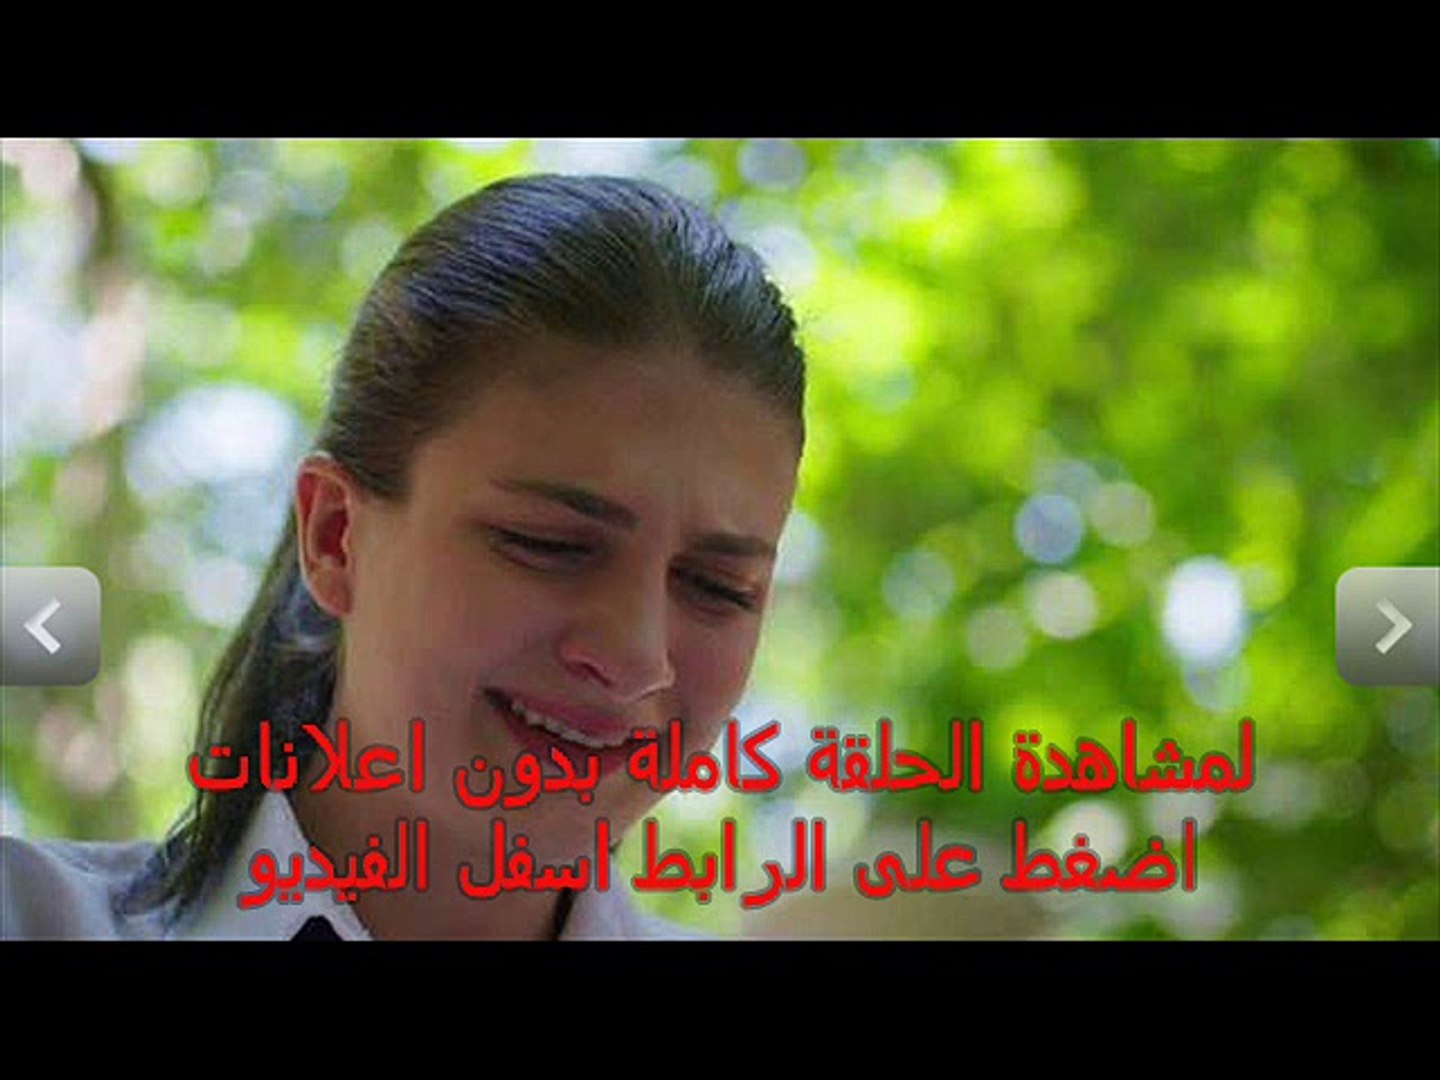 مسلسل الازهار الحزينة الحلقة 62 كاملة مترجمة للعربية Full Hd Video Dailymotion